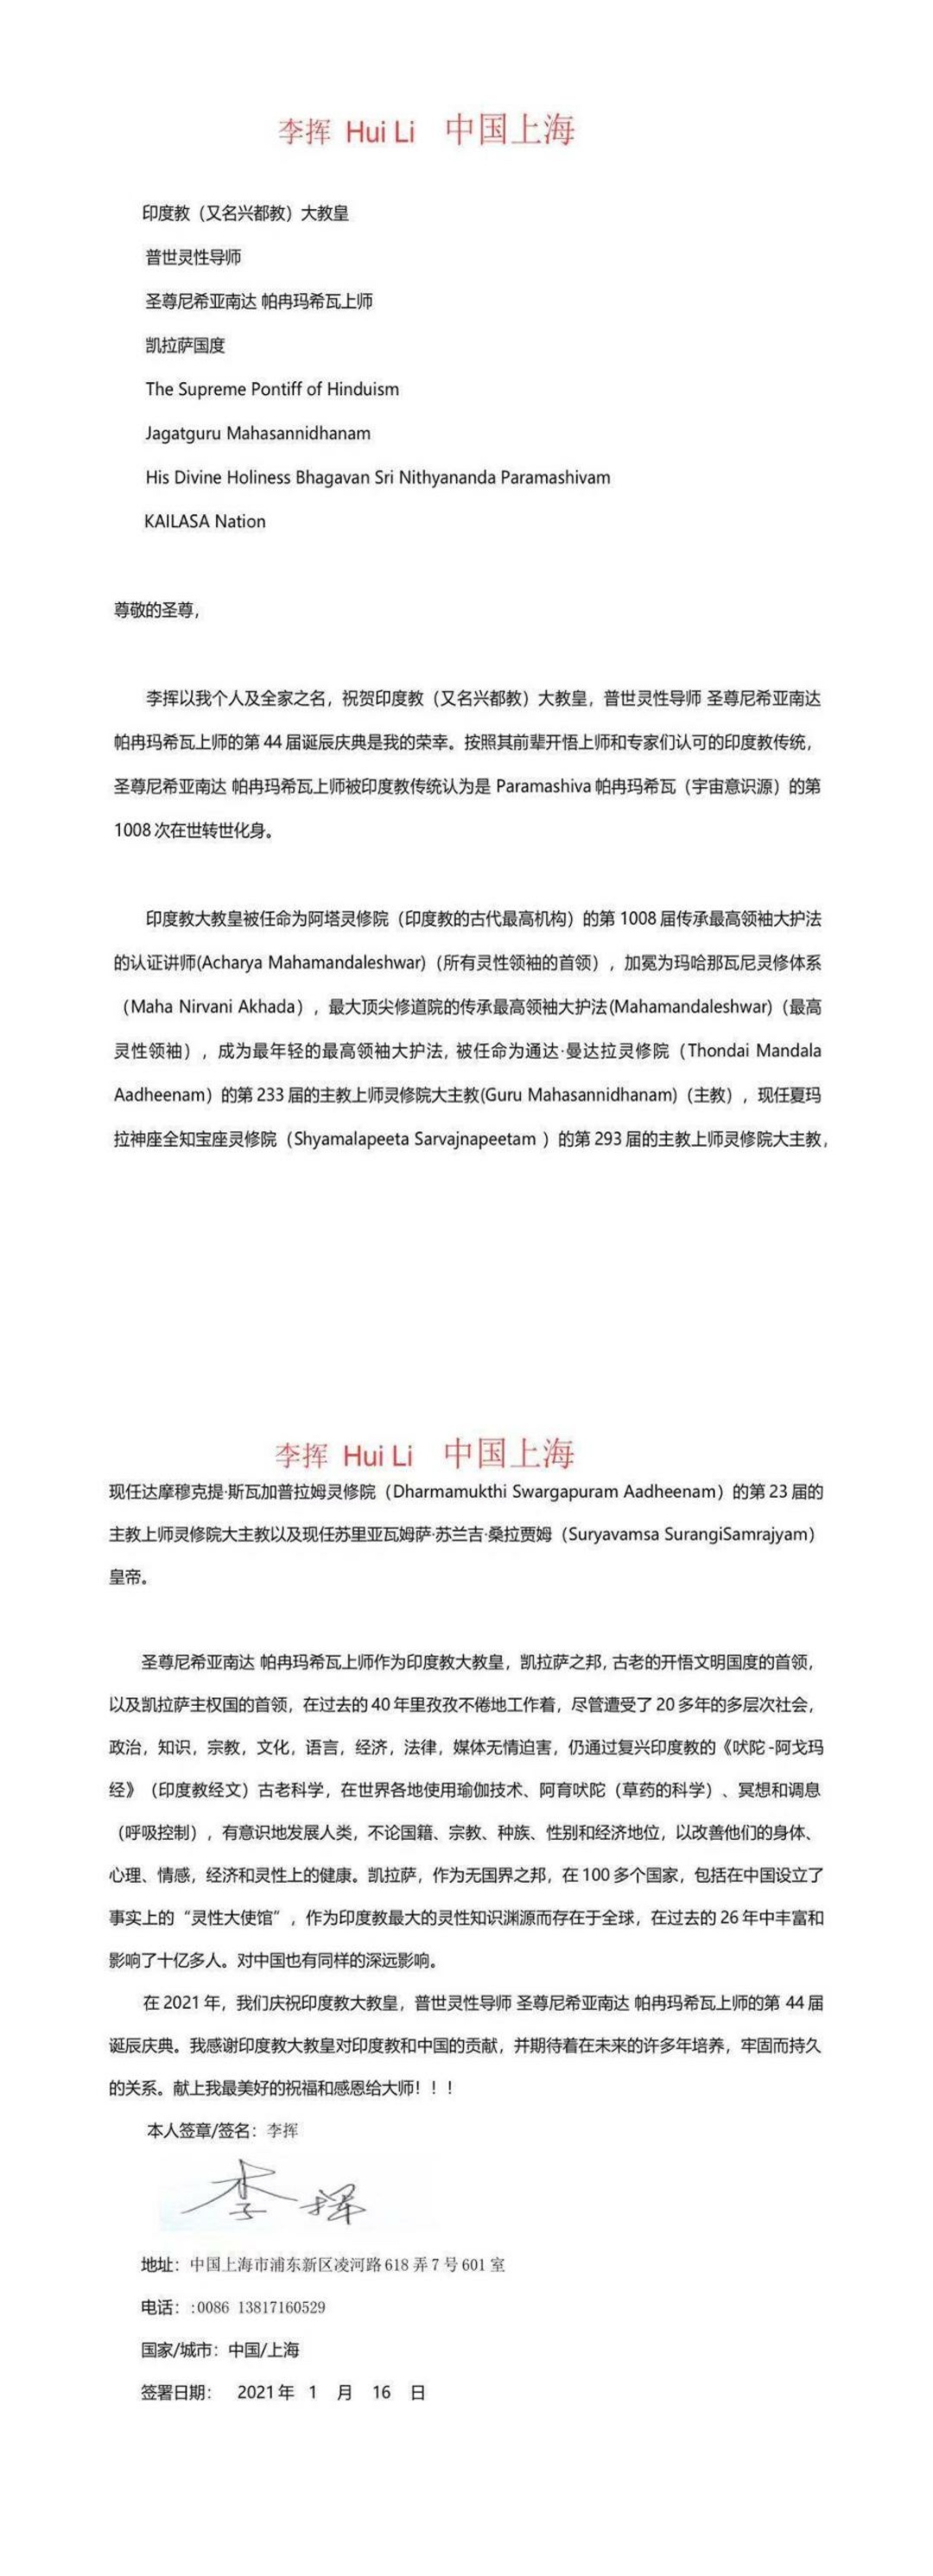 China---Li-Hui---January-16--2021-(Proclamation)-1MmahO2caaM6Kry3PAMIOVarN5fj9DCWD.pdf